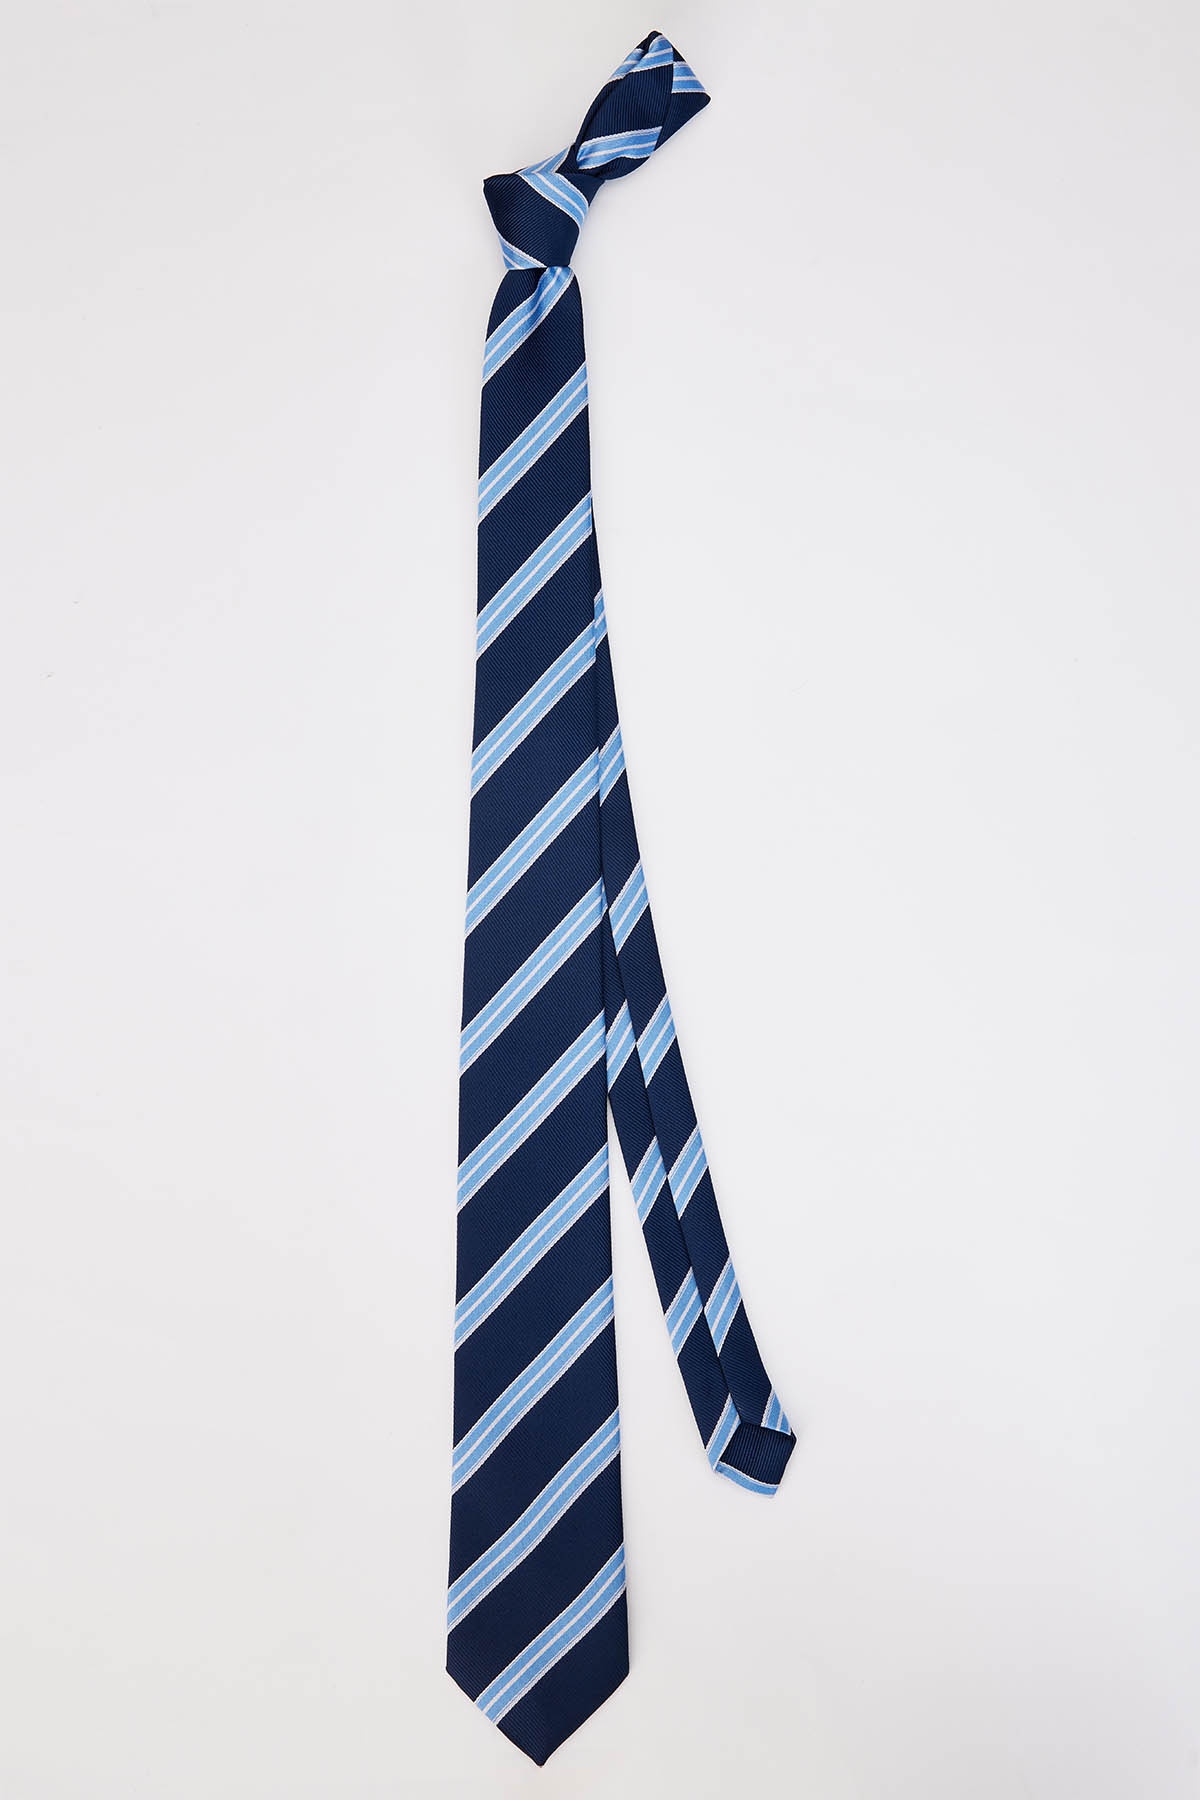   Nyakkendő